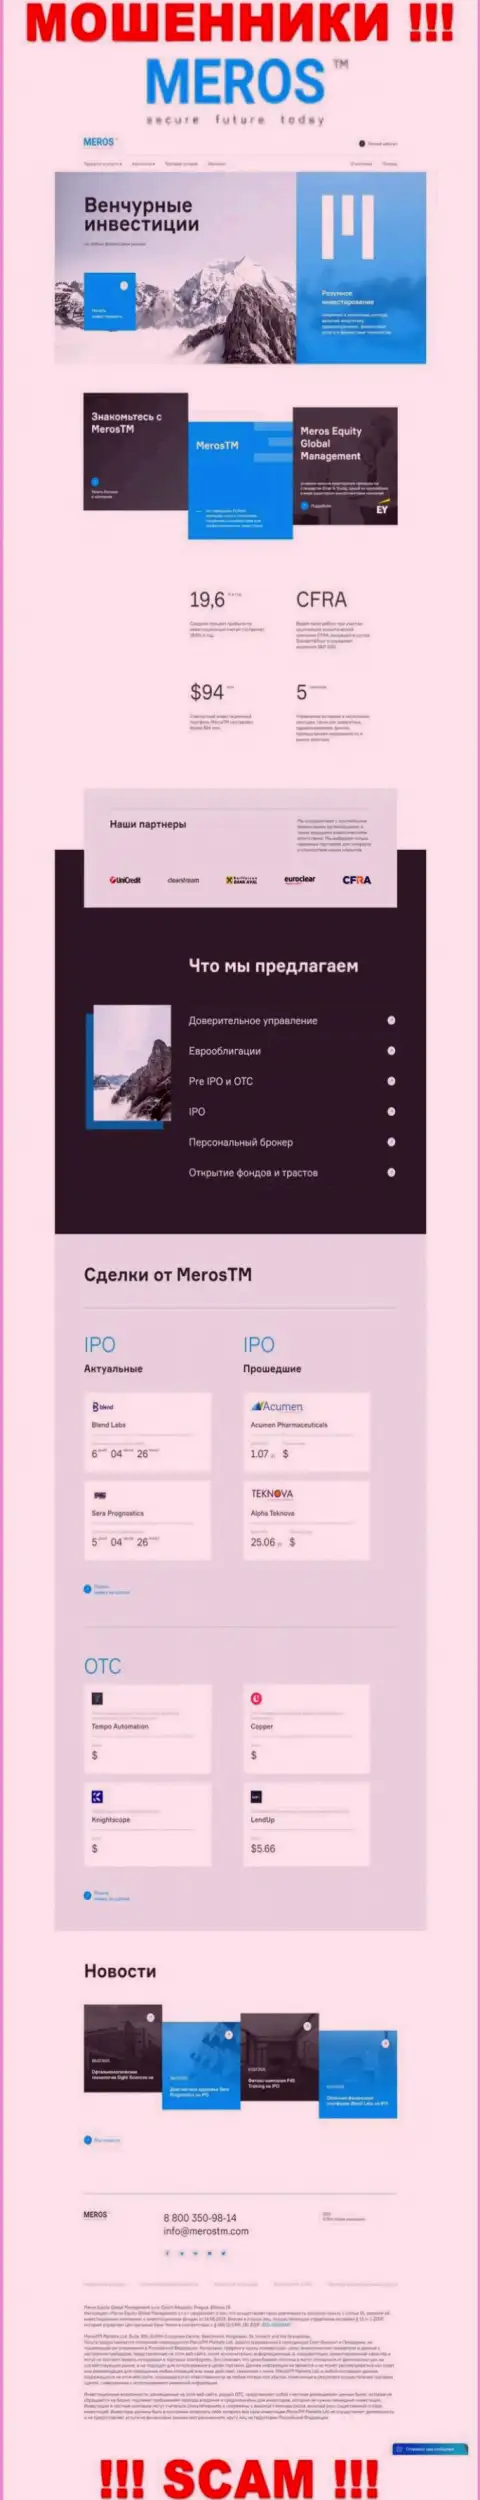 Обзор официального сайта шулеров MerosTM